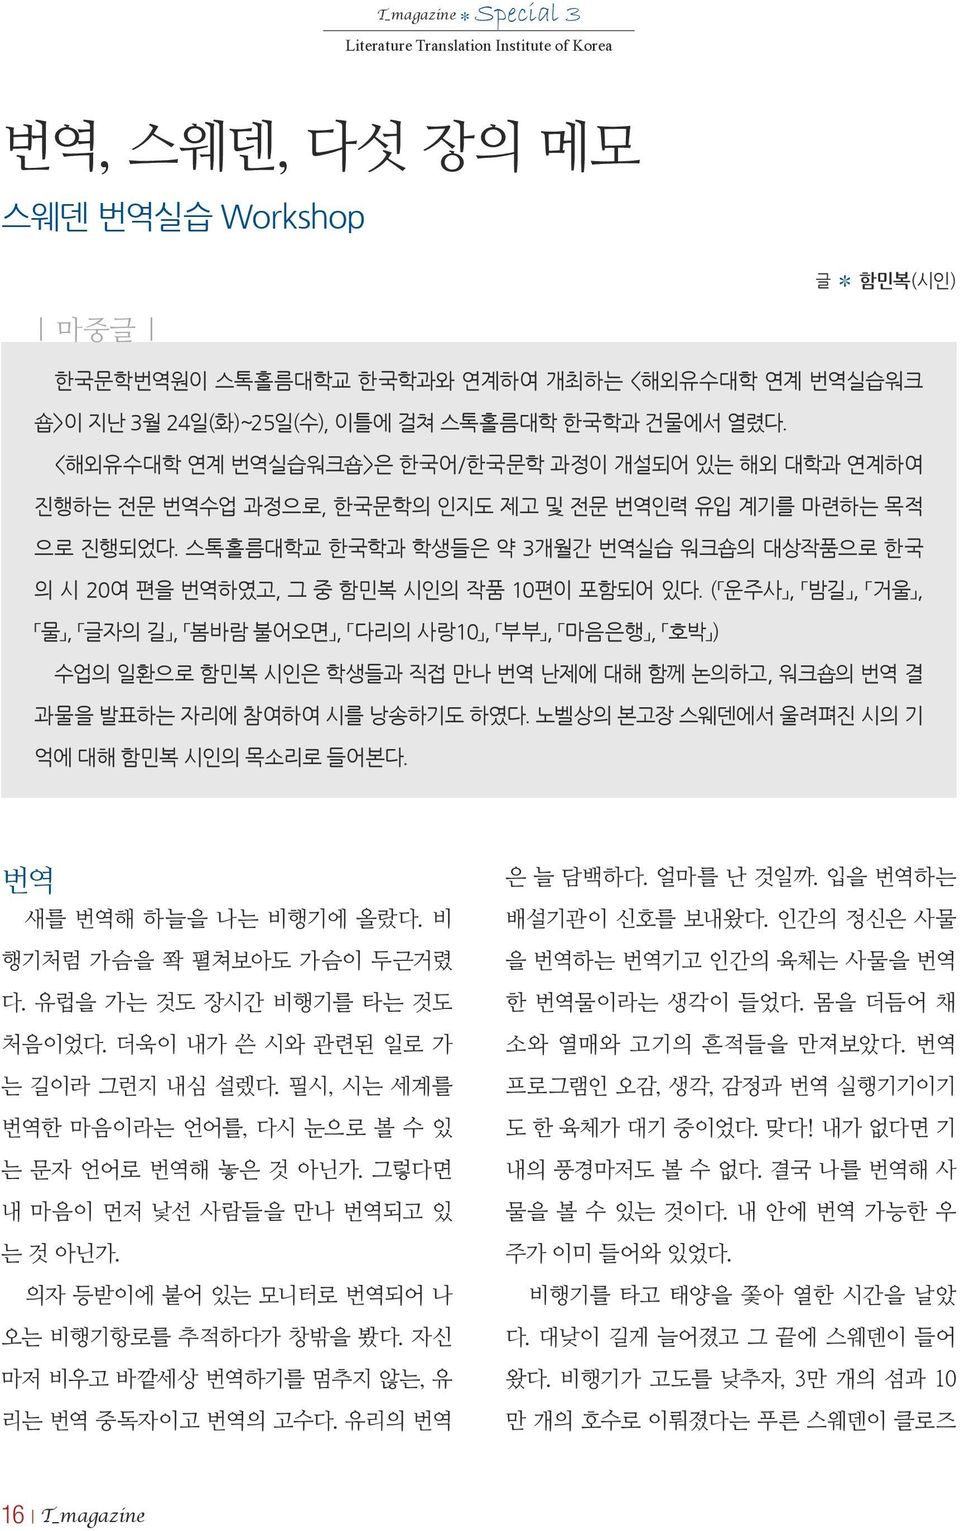 스톡홀름대학교 한국학과 학생들은 약 3개월간 번역실습 워크숍의 대상작품으로 한국 의 시 20여 편을 번역하였고, 그 중 함민복 시인의 작품 10편이 포함되어 있다.